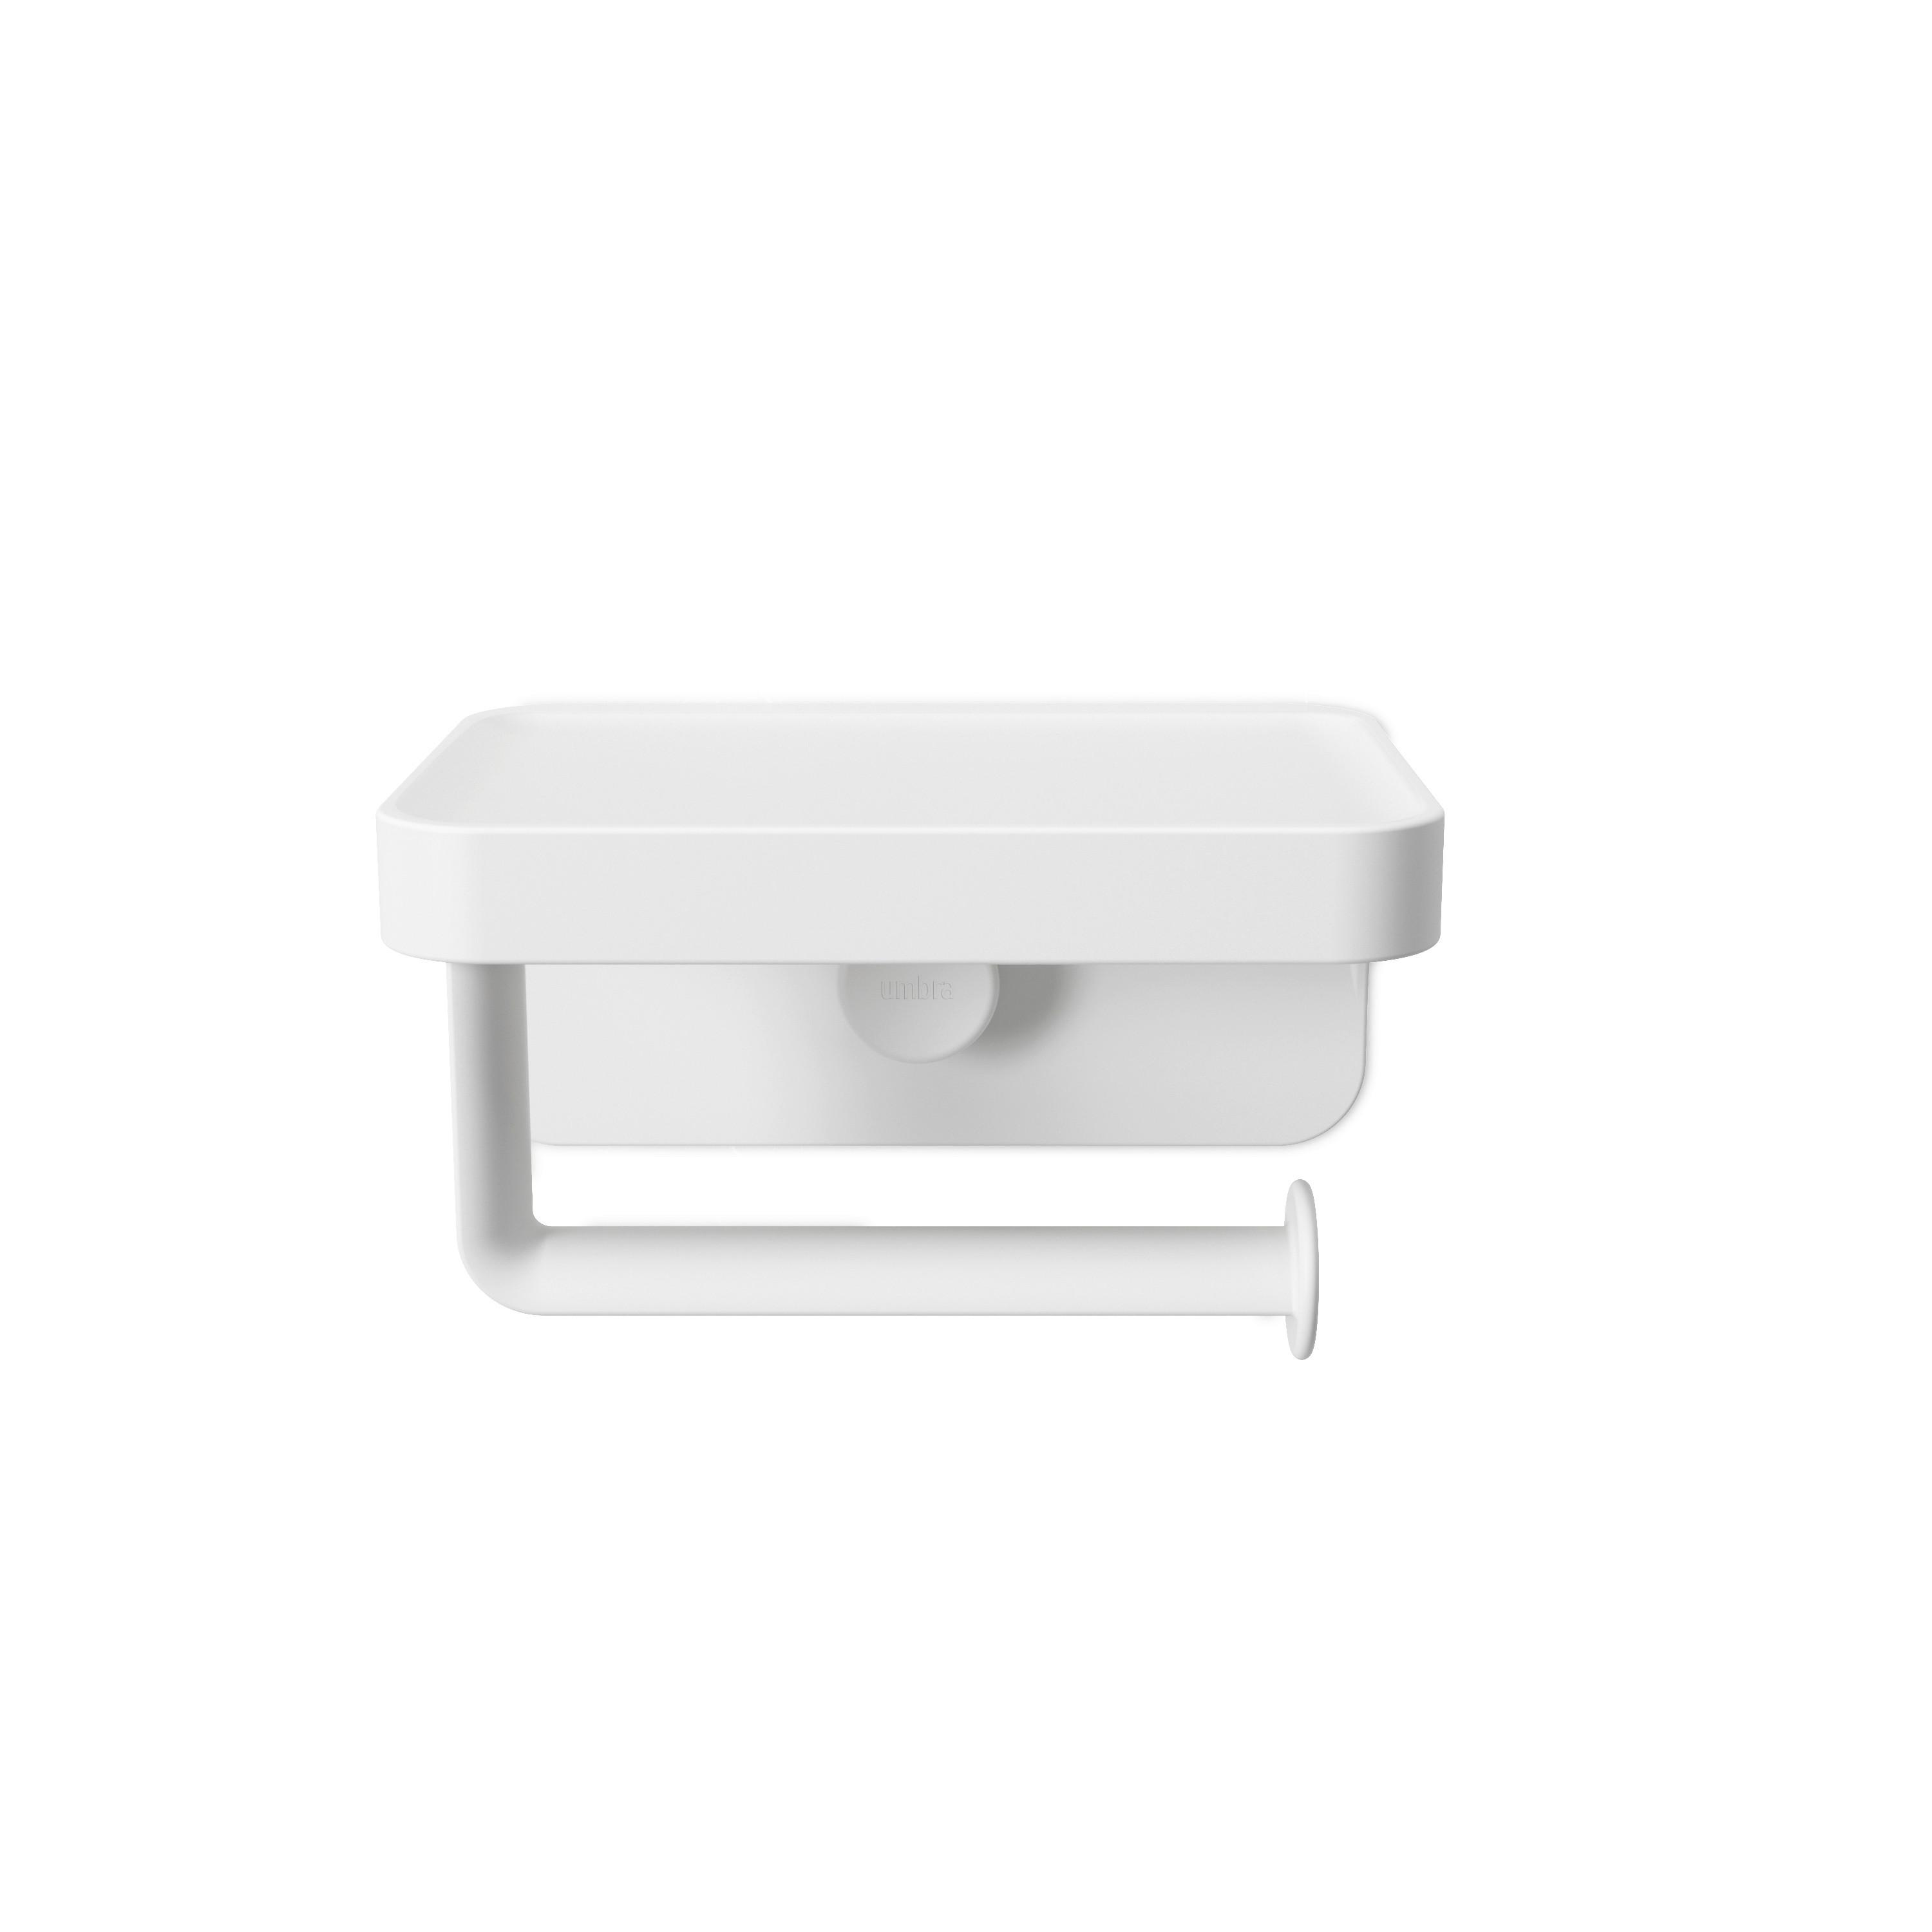 Držák Na Toaletní Papír Easy - bílá, Moderní, plast (16/12/9cm) - Premium Living